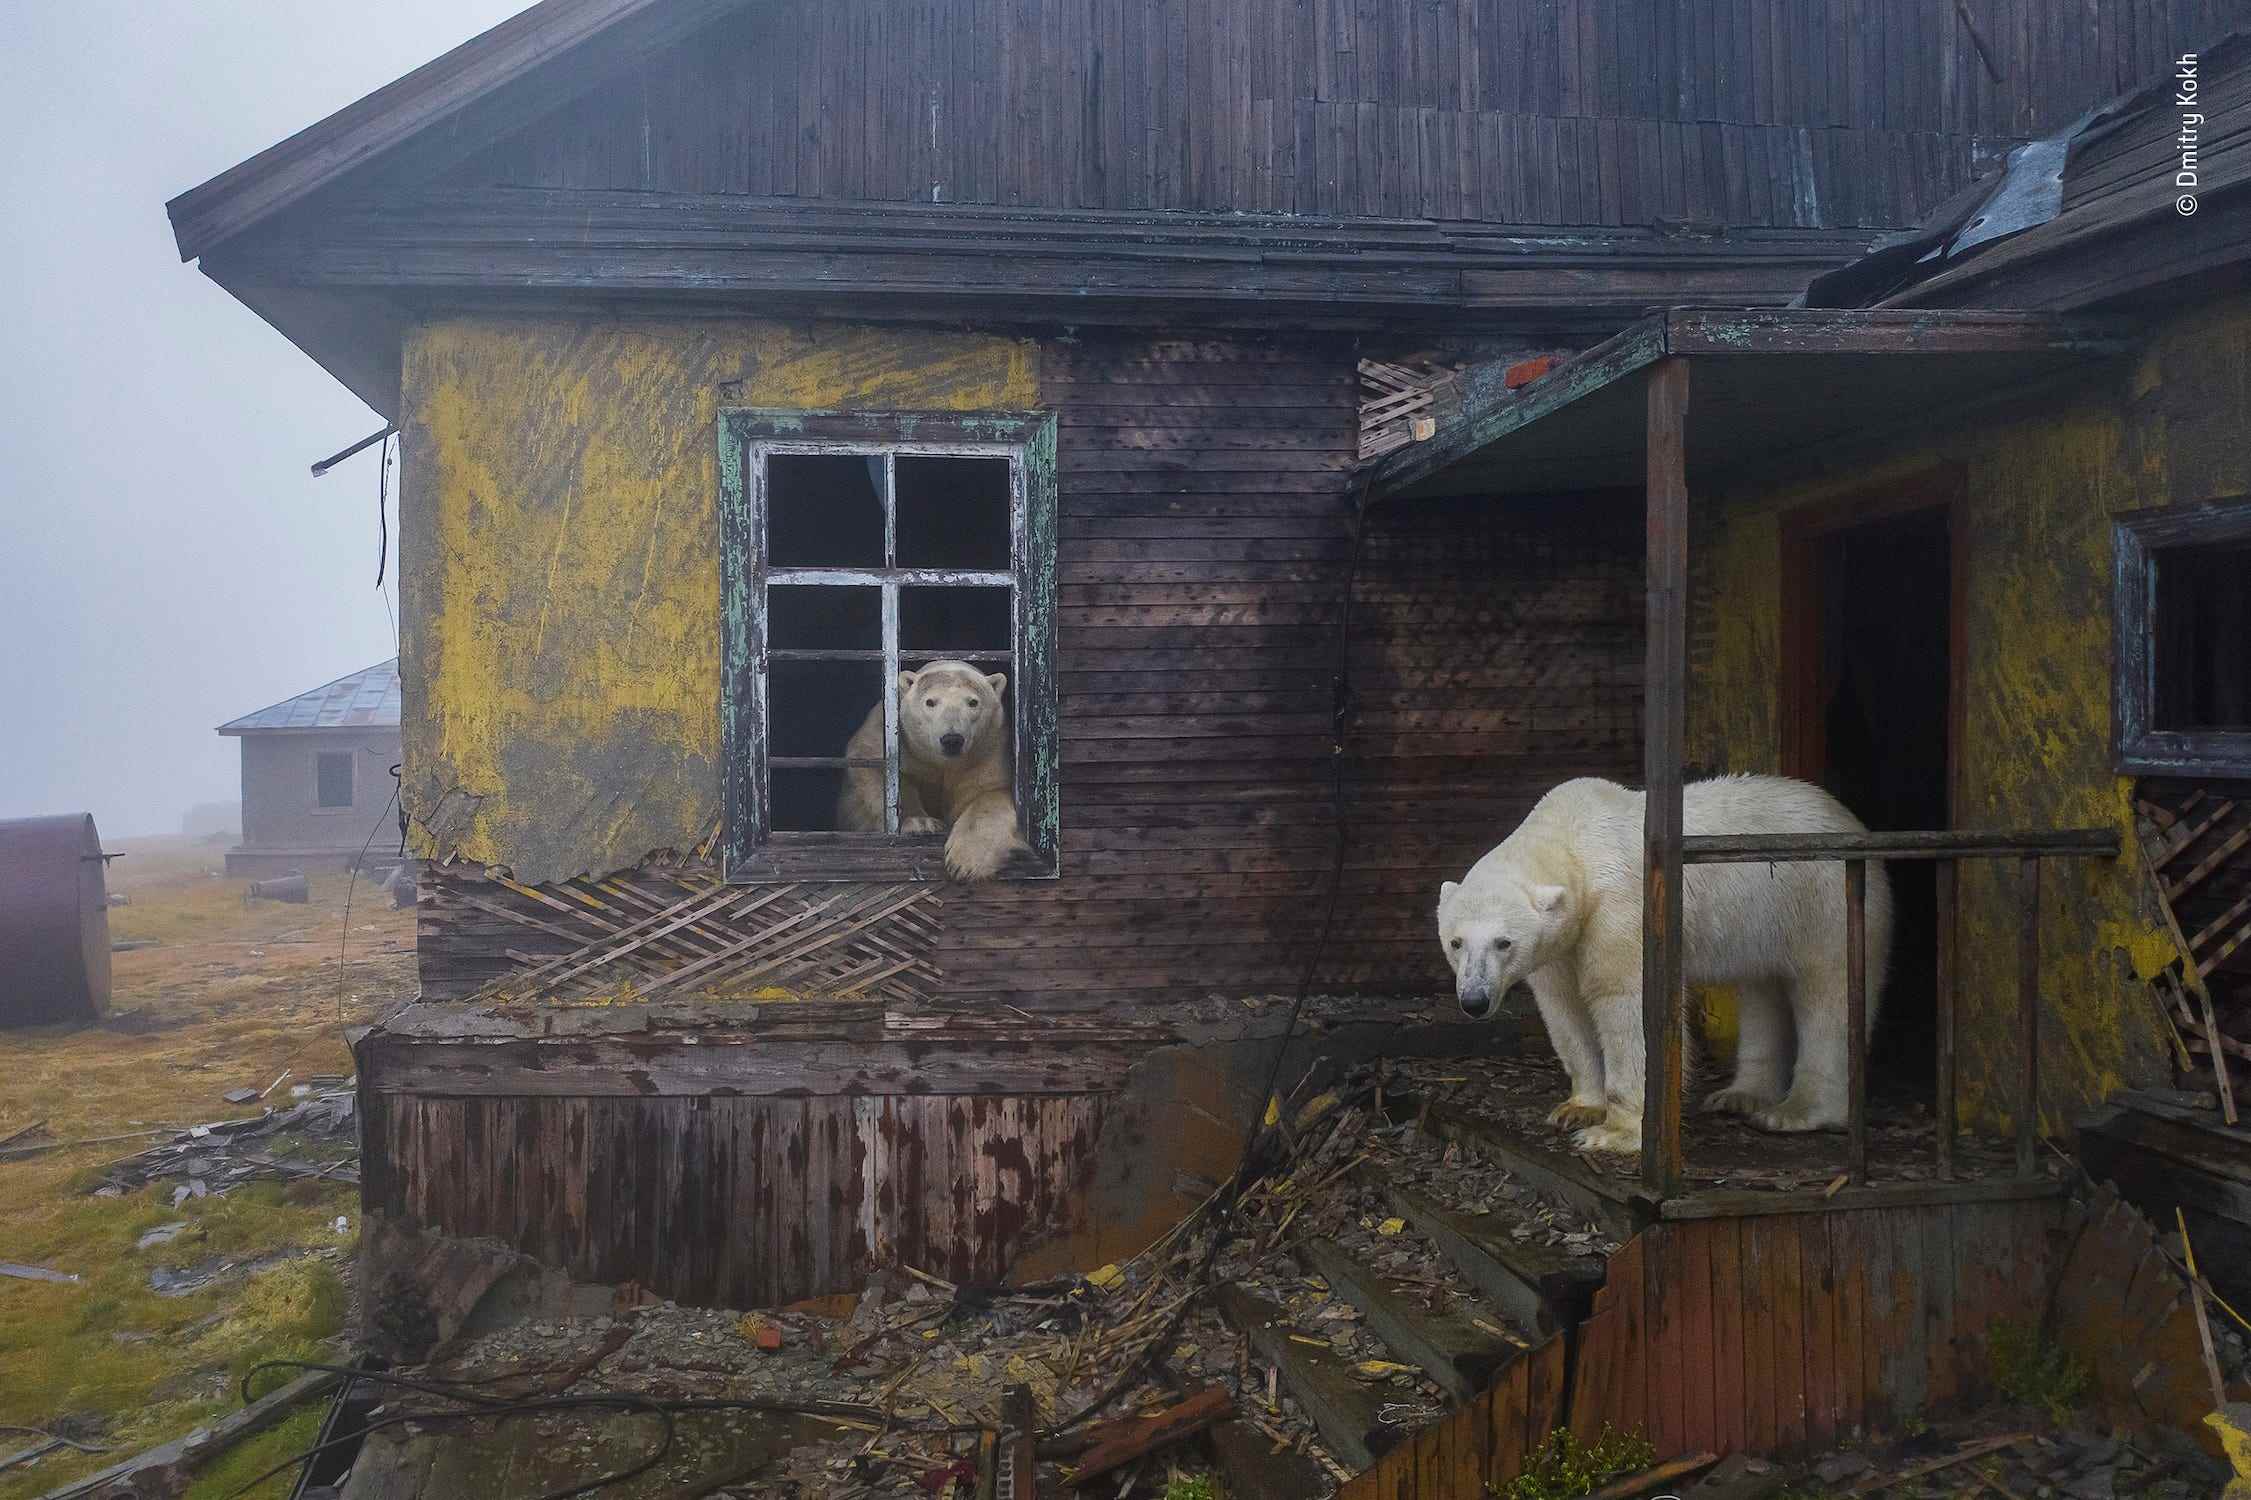 zwei Eisbären in einem heruntergekommenen Haus